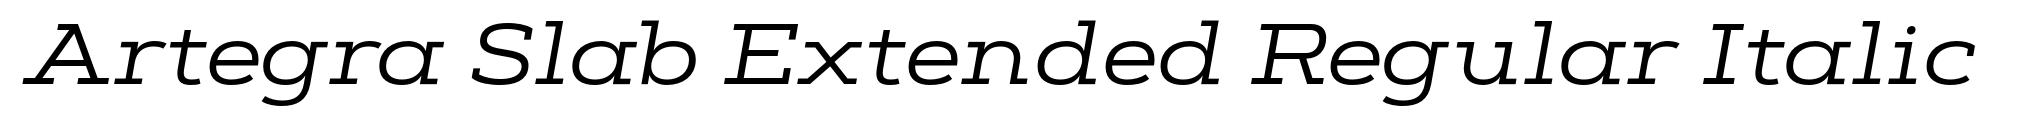 Artegra Slab Extended Regular Italic image